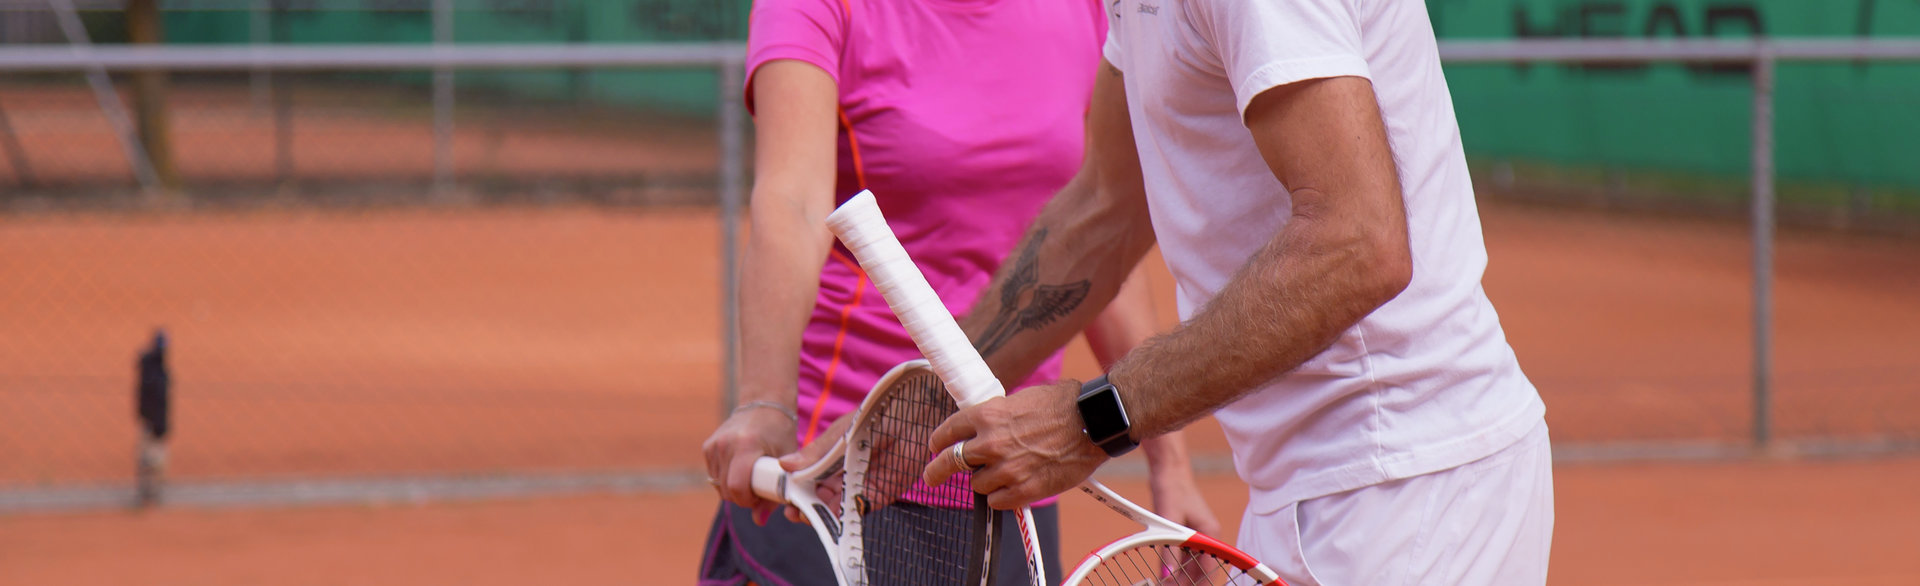 L'allenatore di tennis Gery Riedl durante una sessione di allenamento per un topspin efficiente.